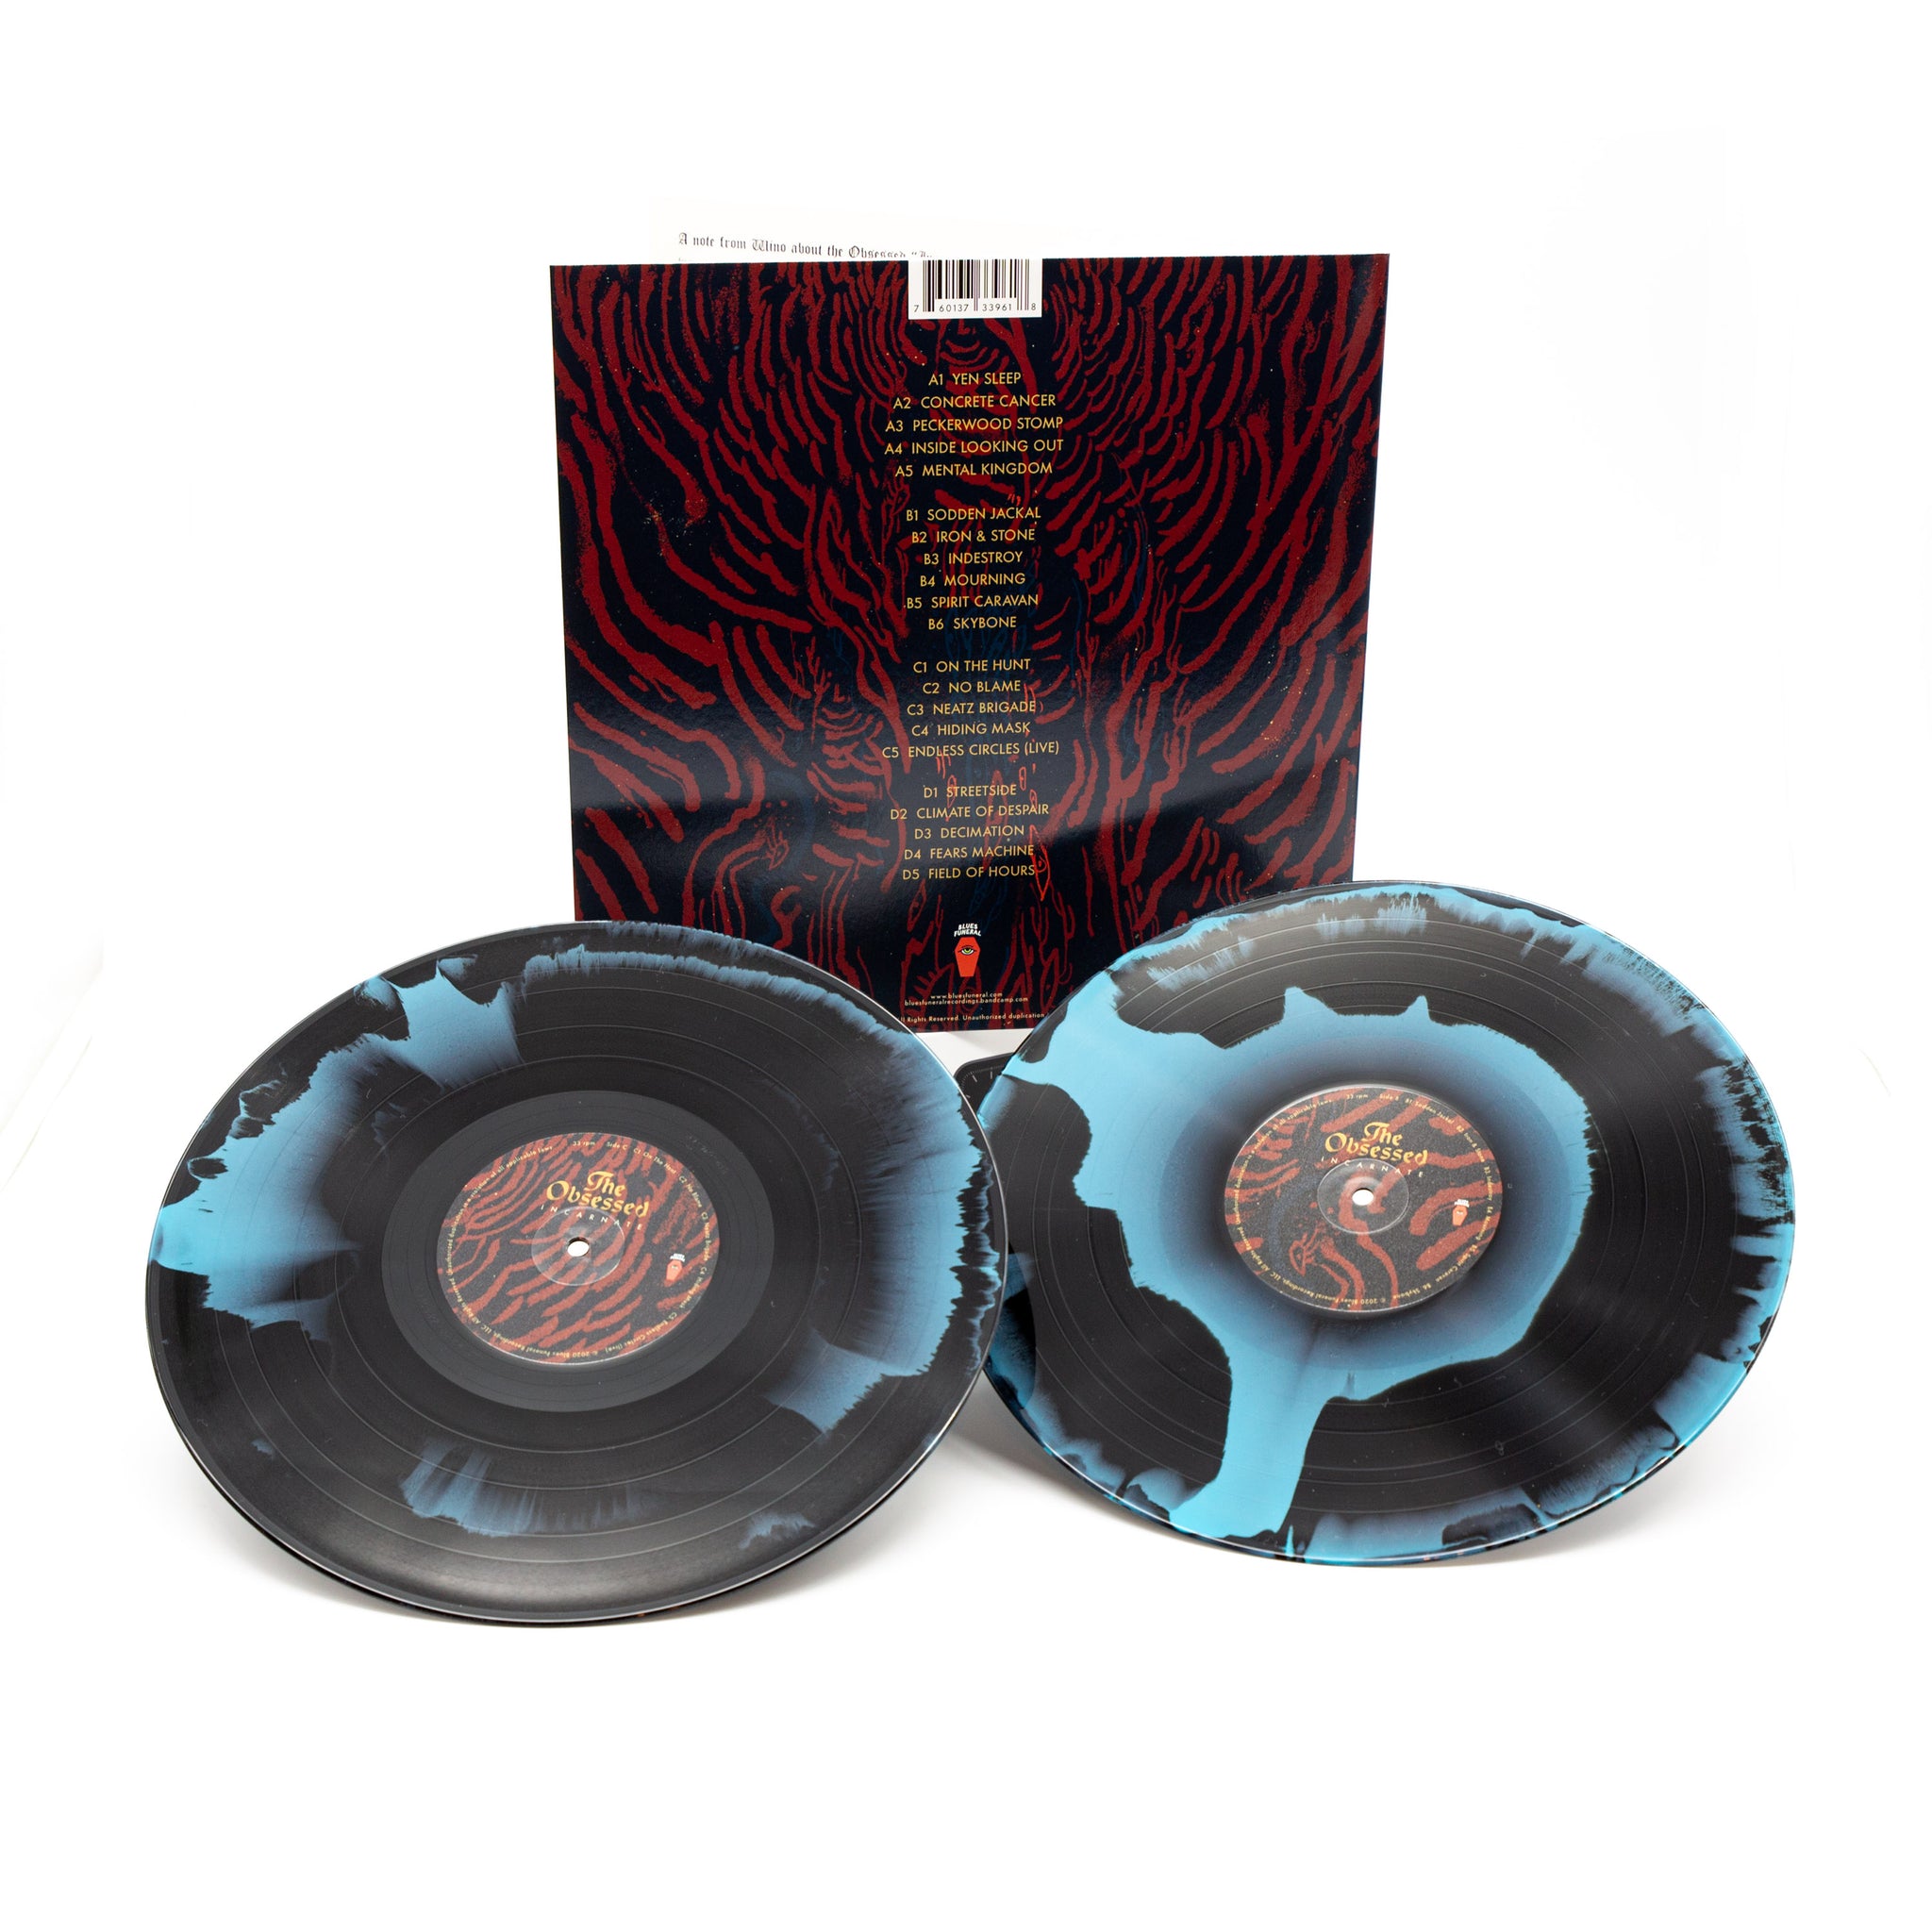 Eternal Blue 180Gr Black Double Gatefold Vinyl LP – Rise Records